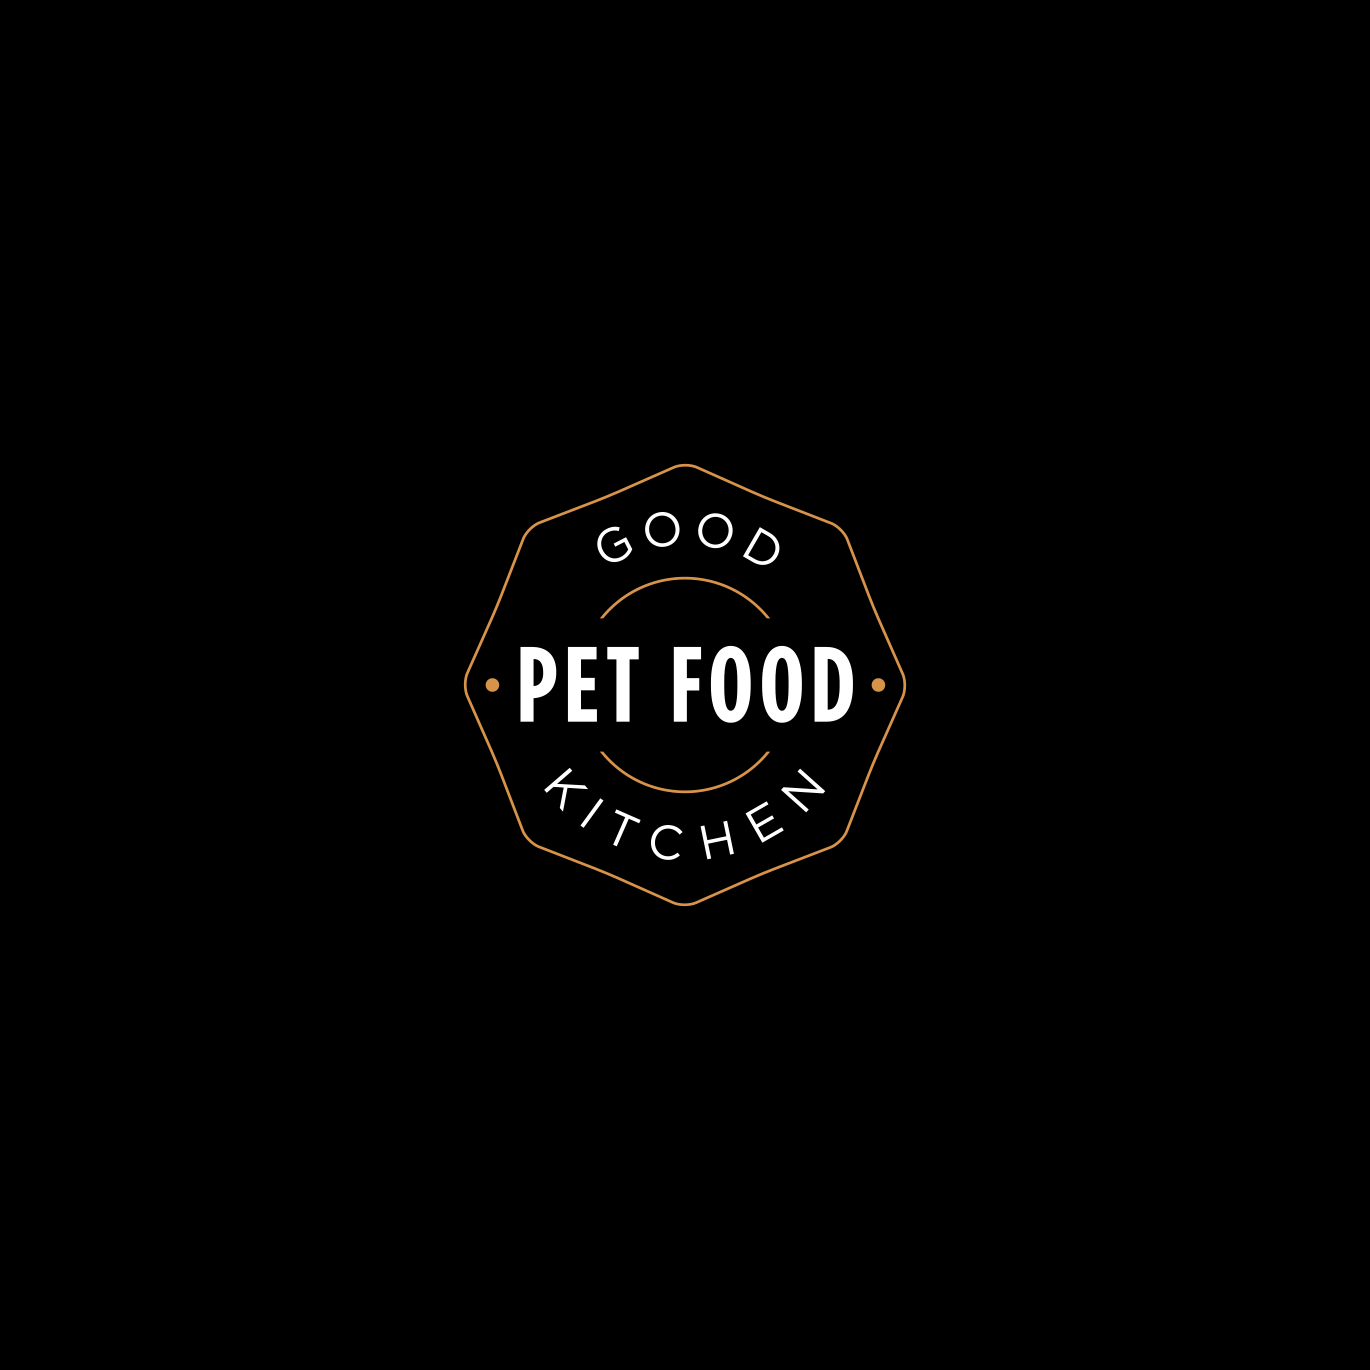 Good Pet Food Kitchen Logo